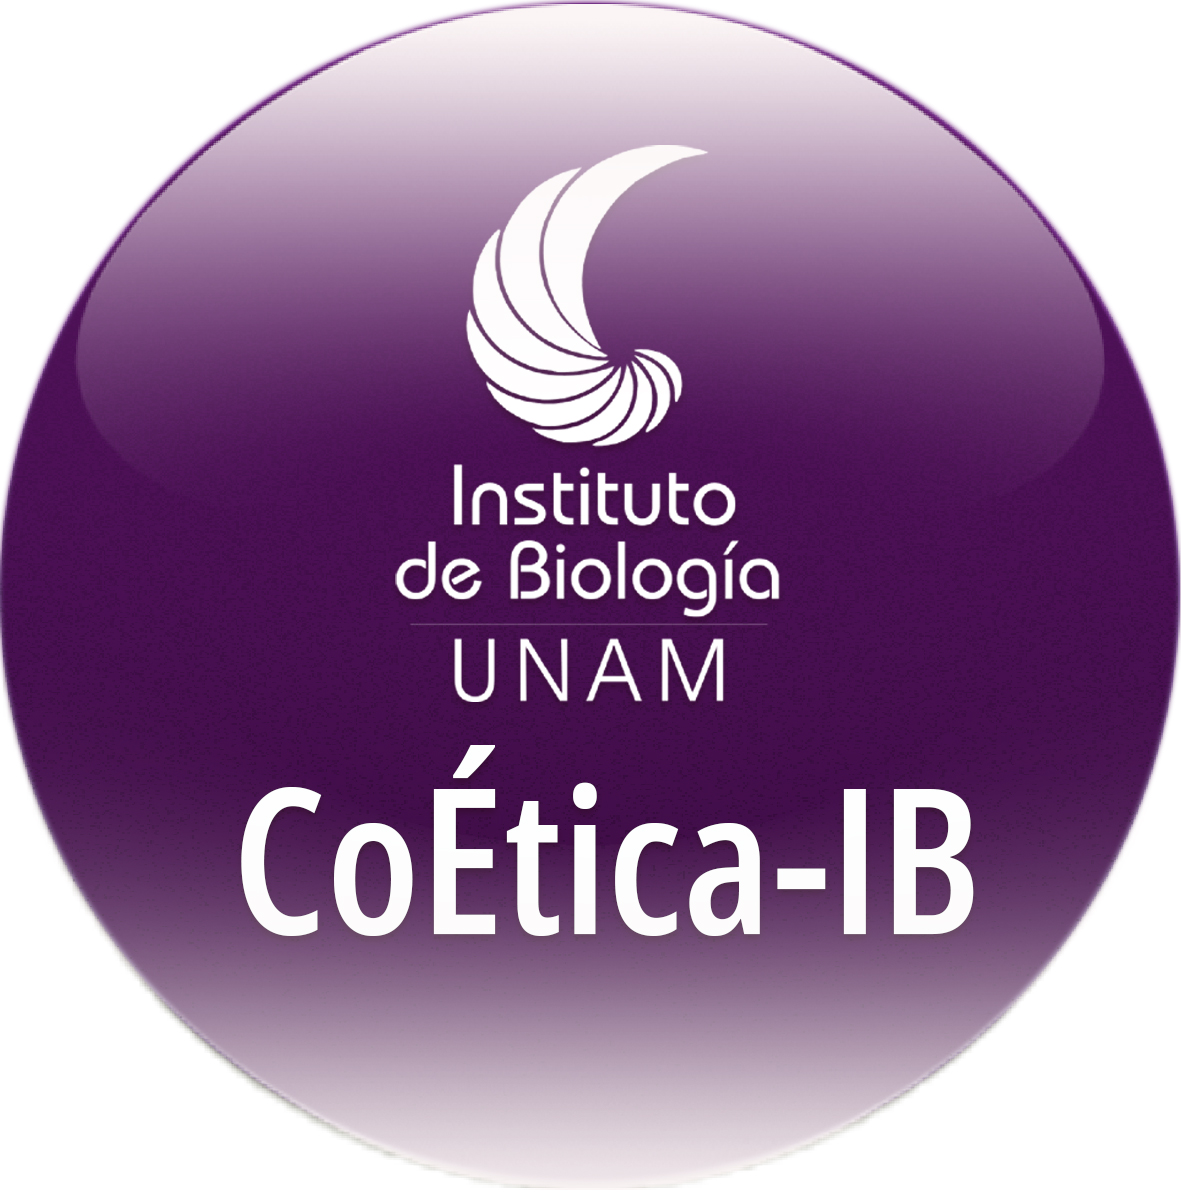 Comité de Ética - Instituto de Biología, UNAM